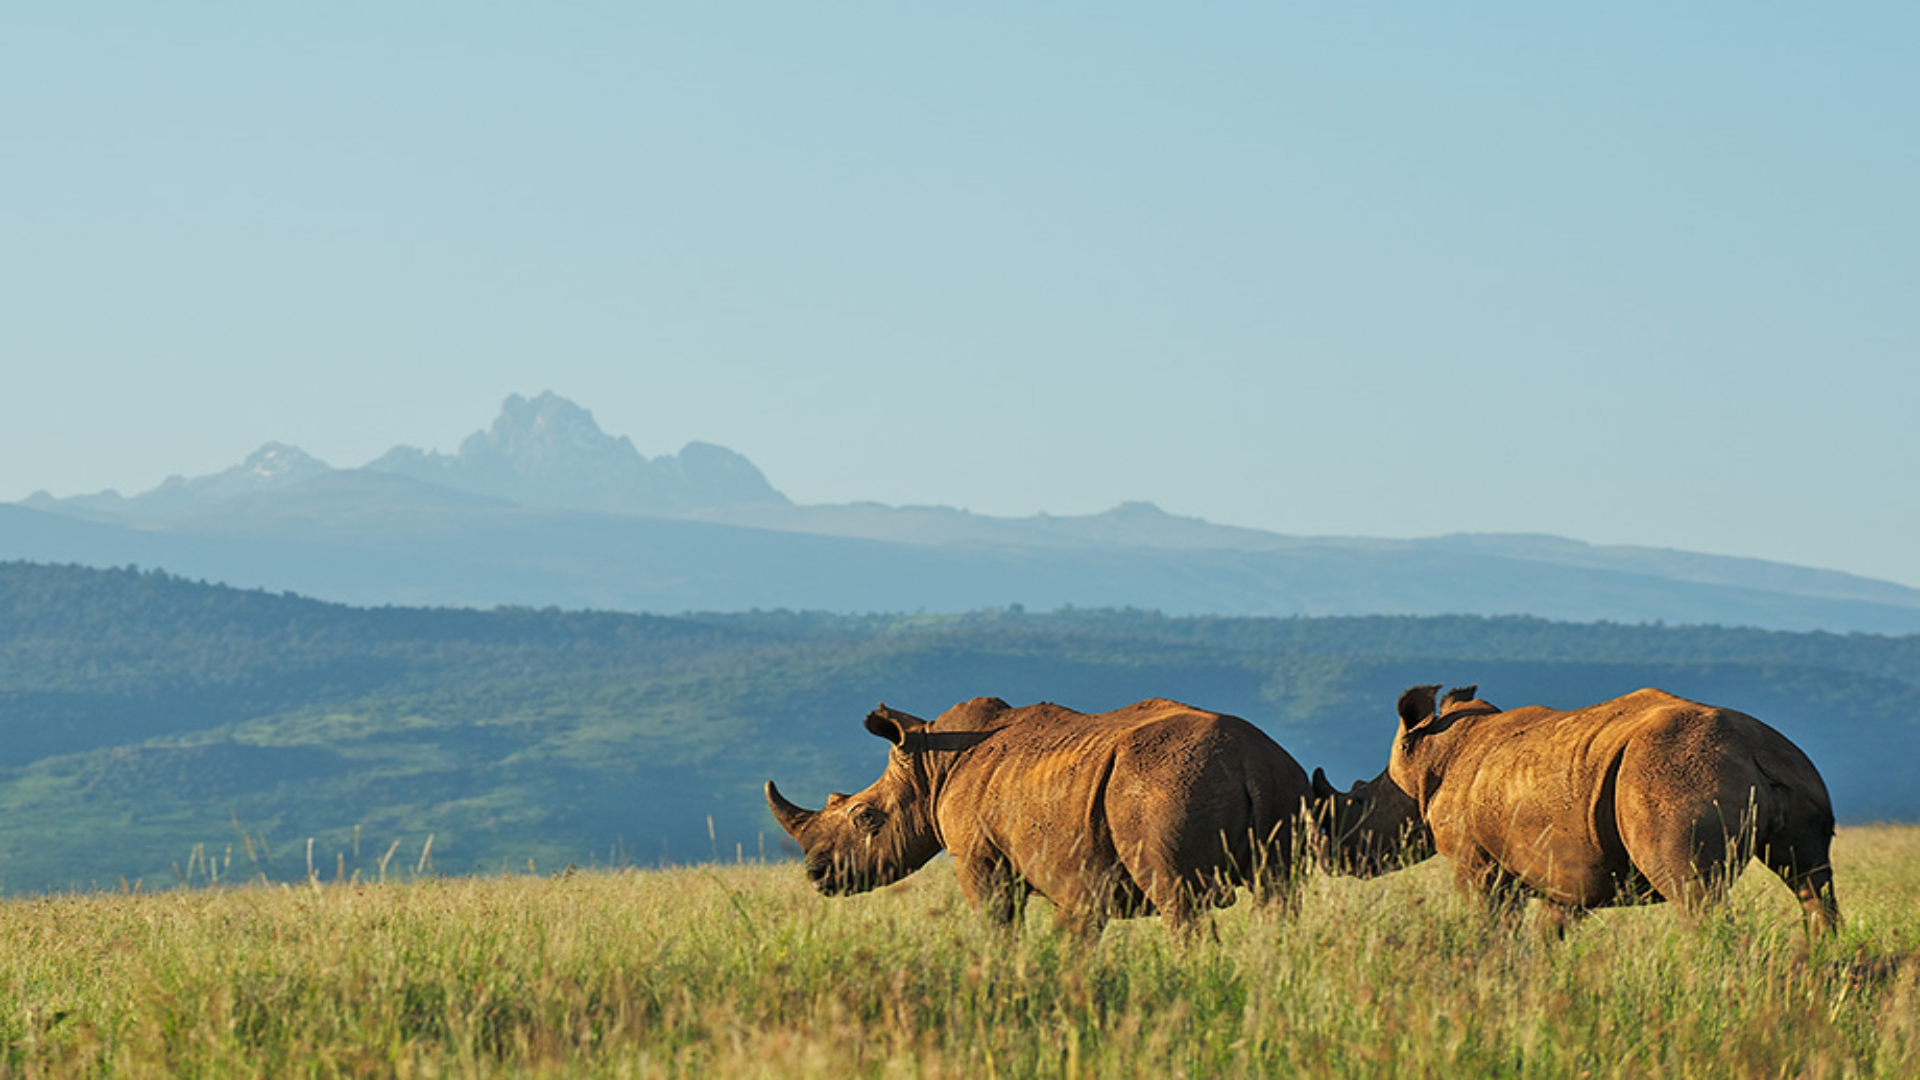 Mount Kenya National Park | Climb Mount Kenya